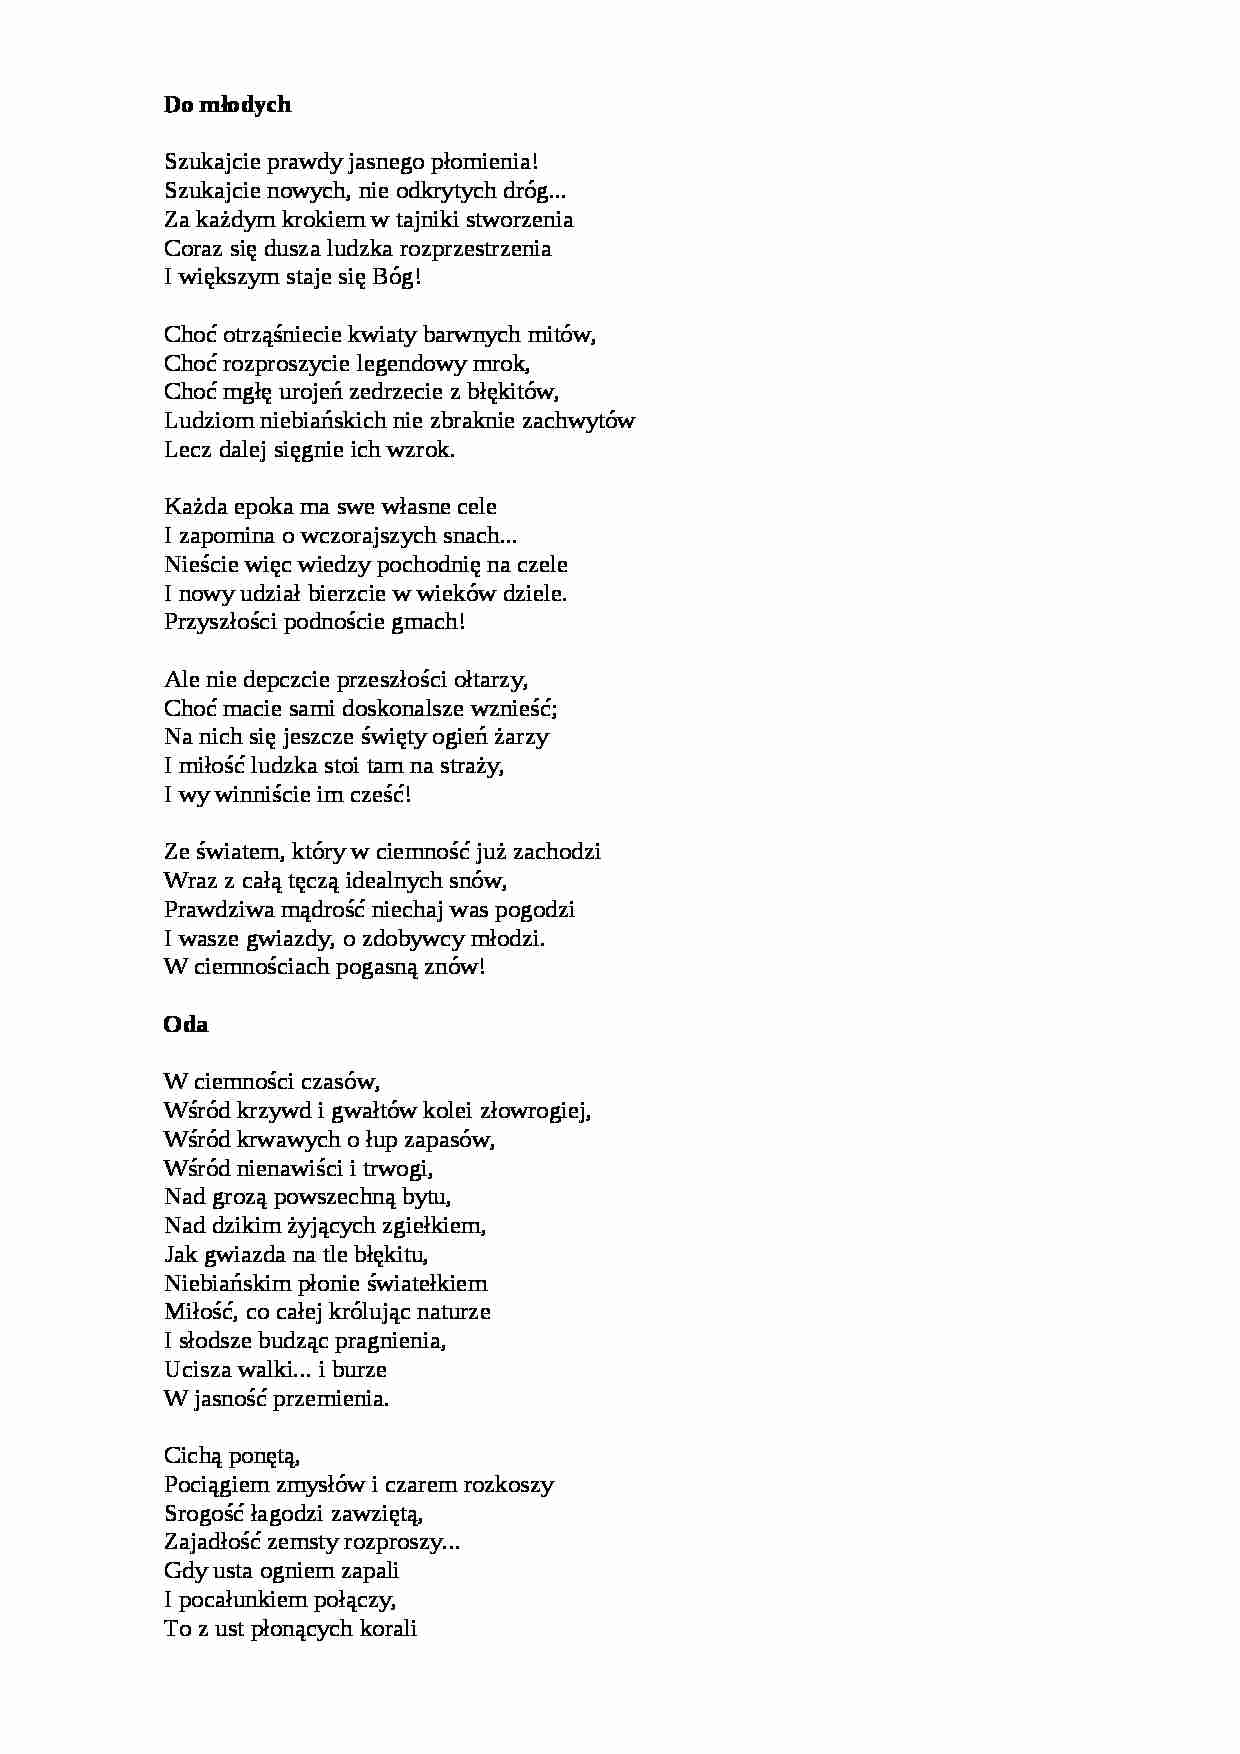 Adam Asnyk, wiersze wybrane - strona 1